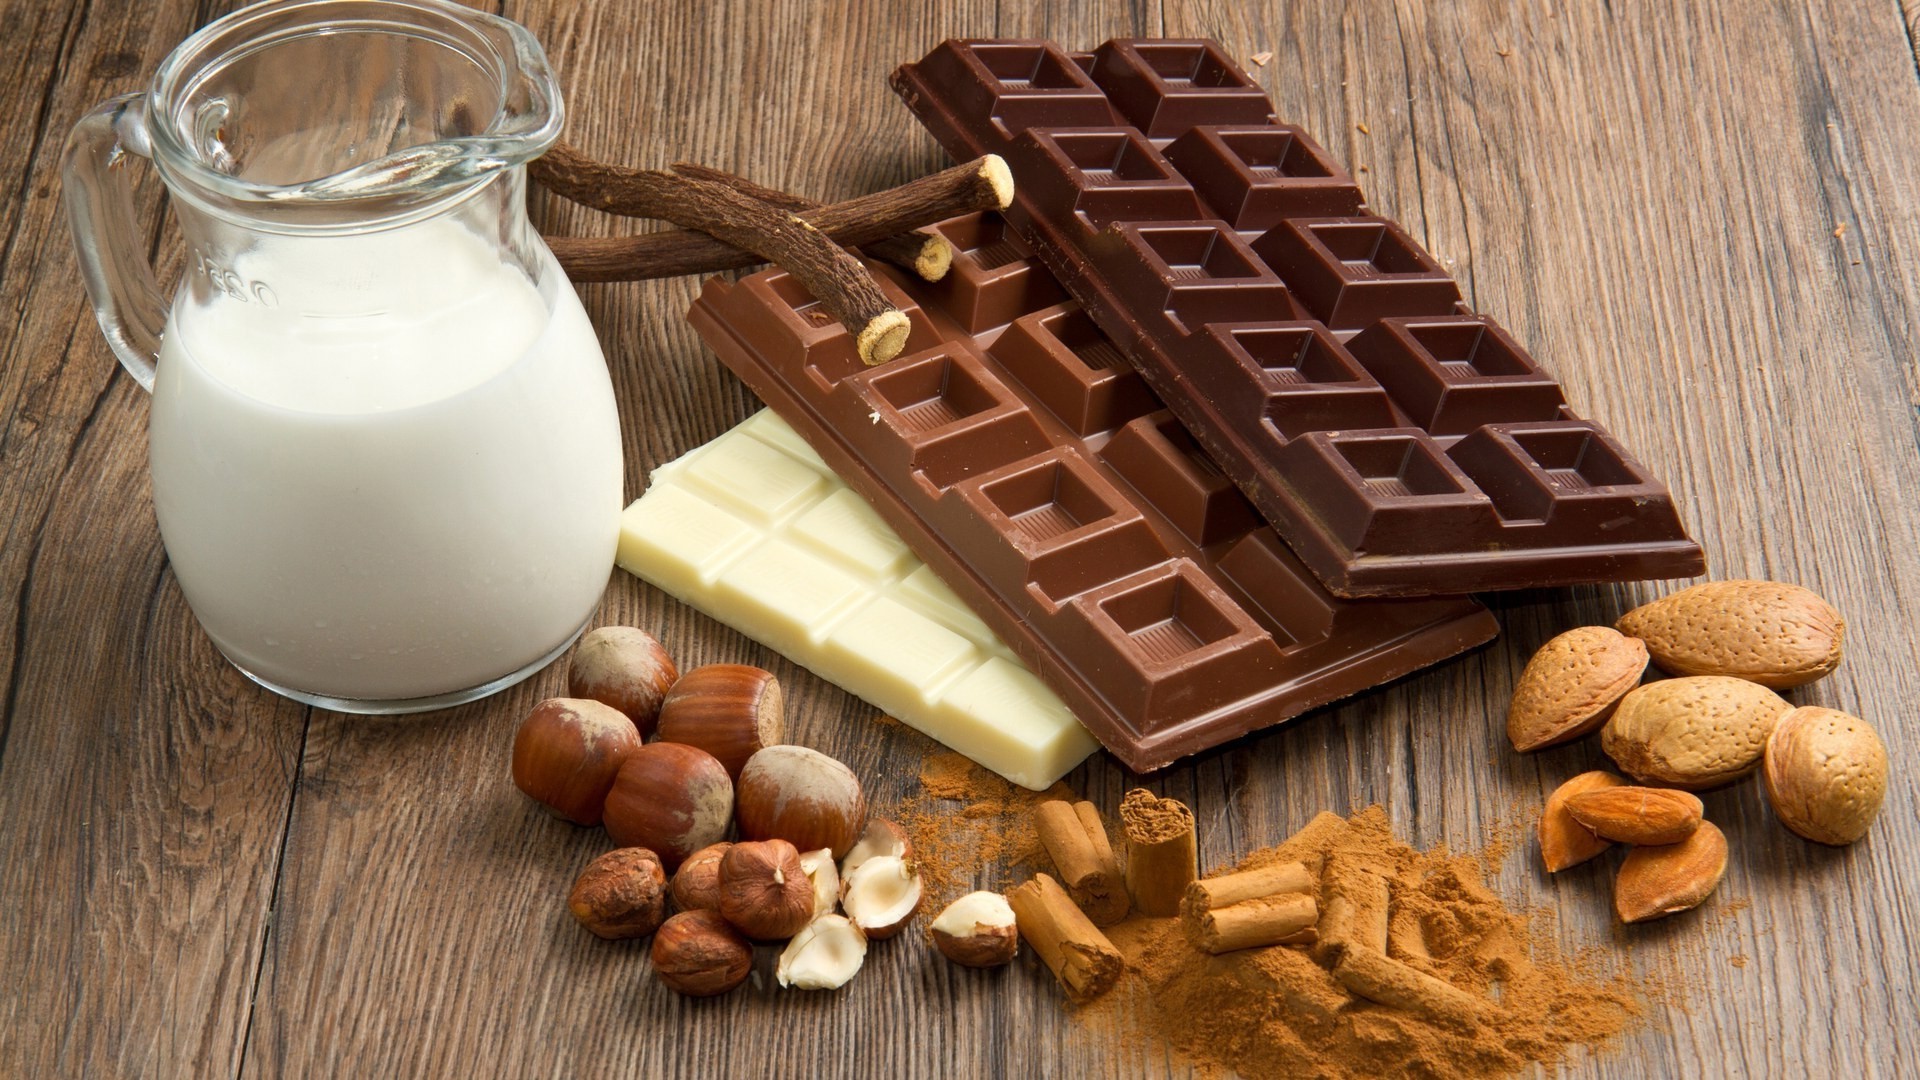 шоколад молоко еда древесины сладкий вкусные гайка деревянные сахар конфеты питание пить корица рустик освежение ингредиенты вкусные крем